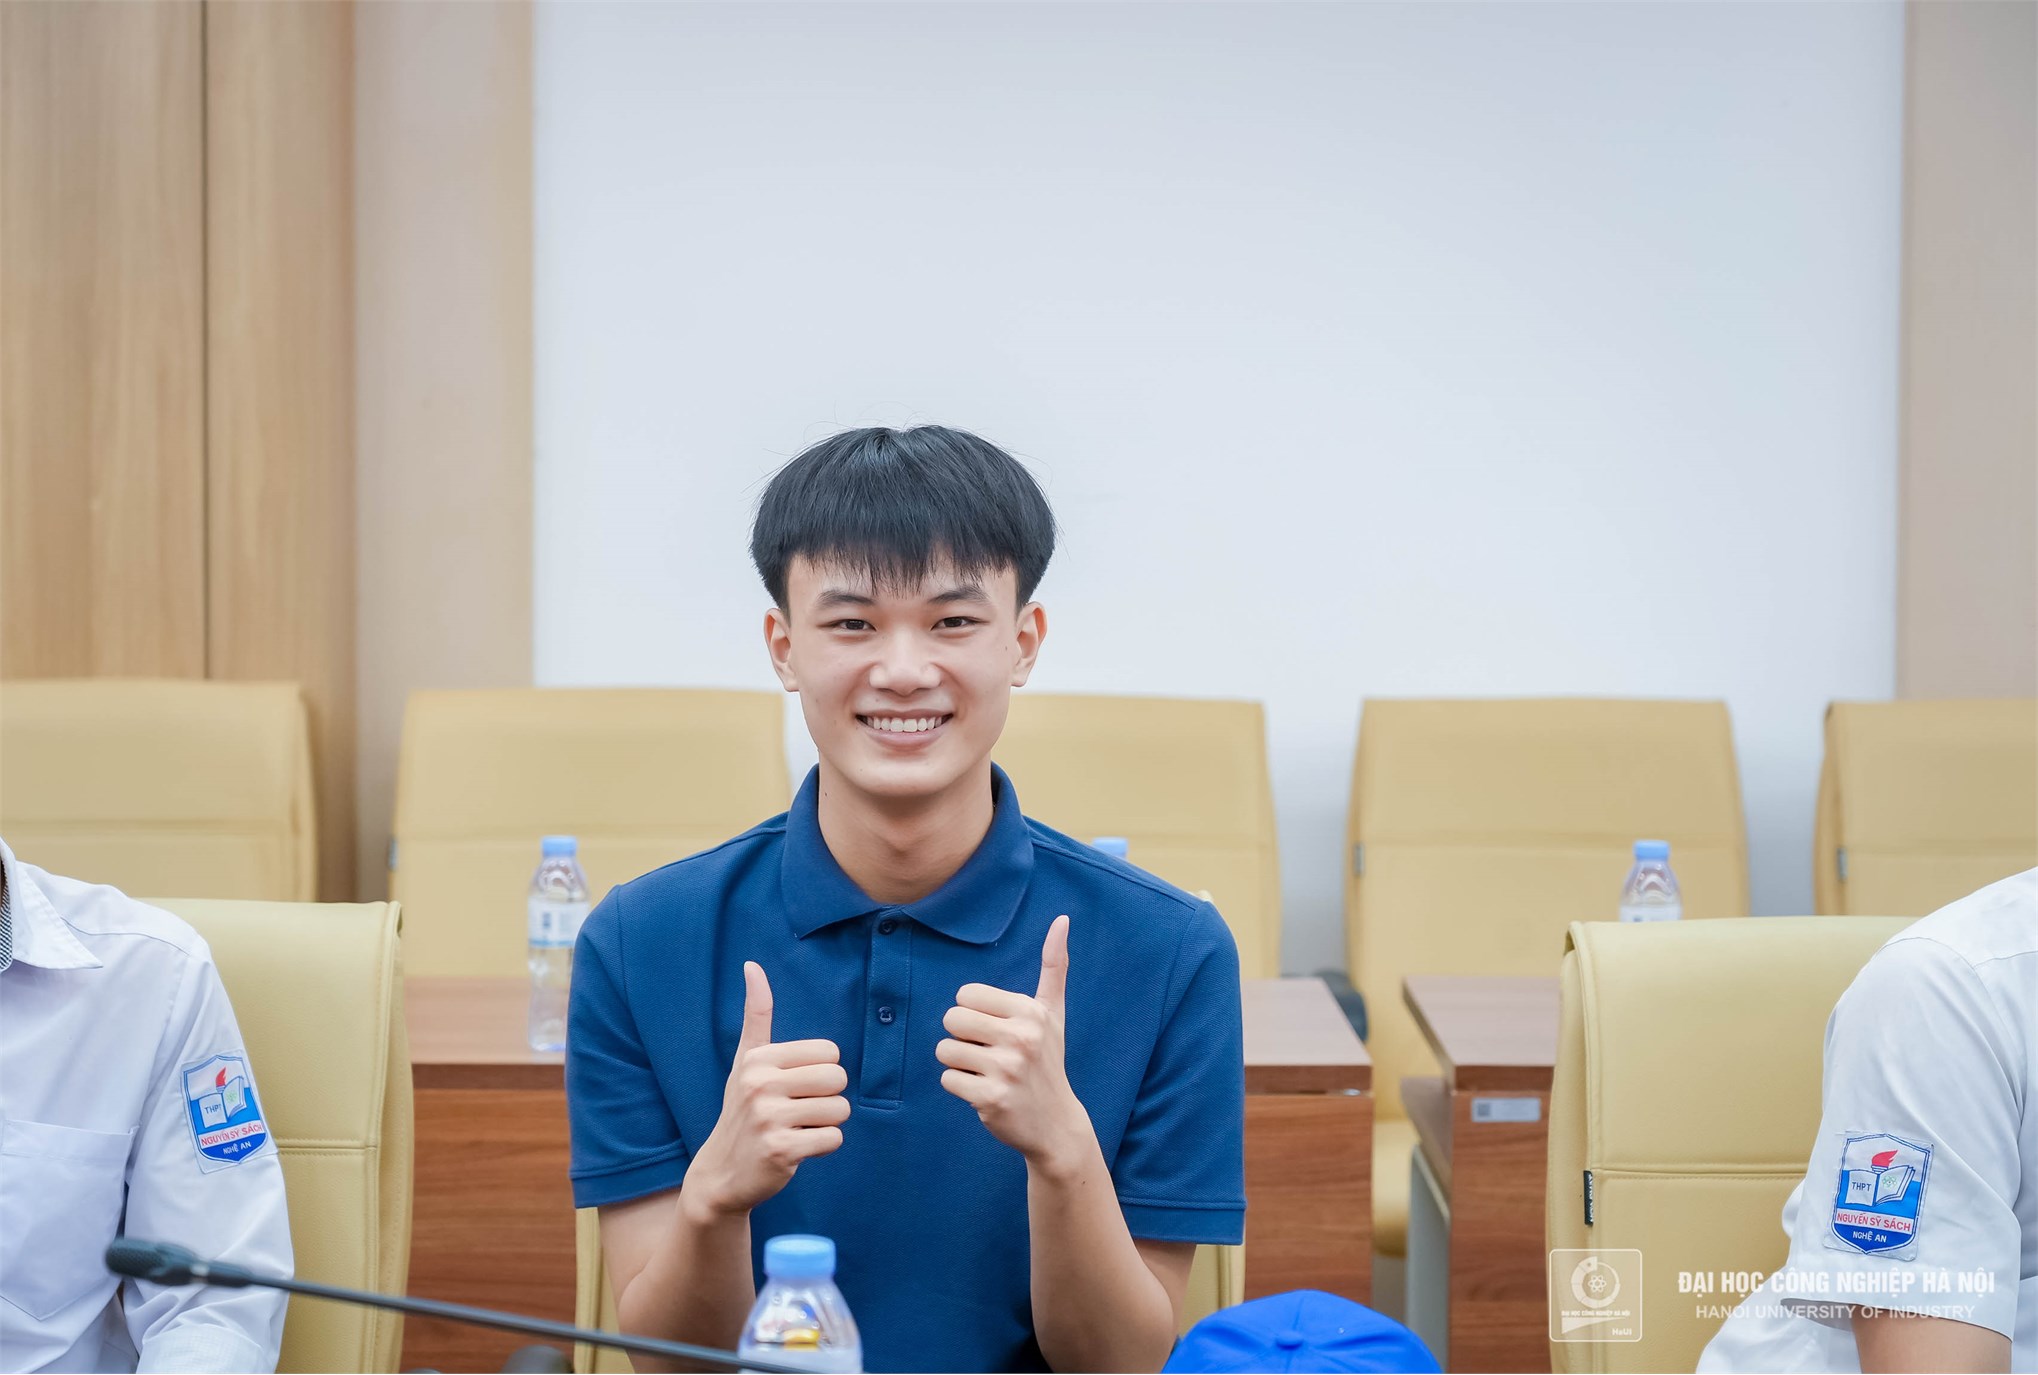 HaUI đón tiếp thầy và trò trường THPT Nguyễn Sỹ Sách – Nghệ An tham quan hướng nghiệp 